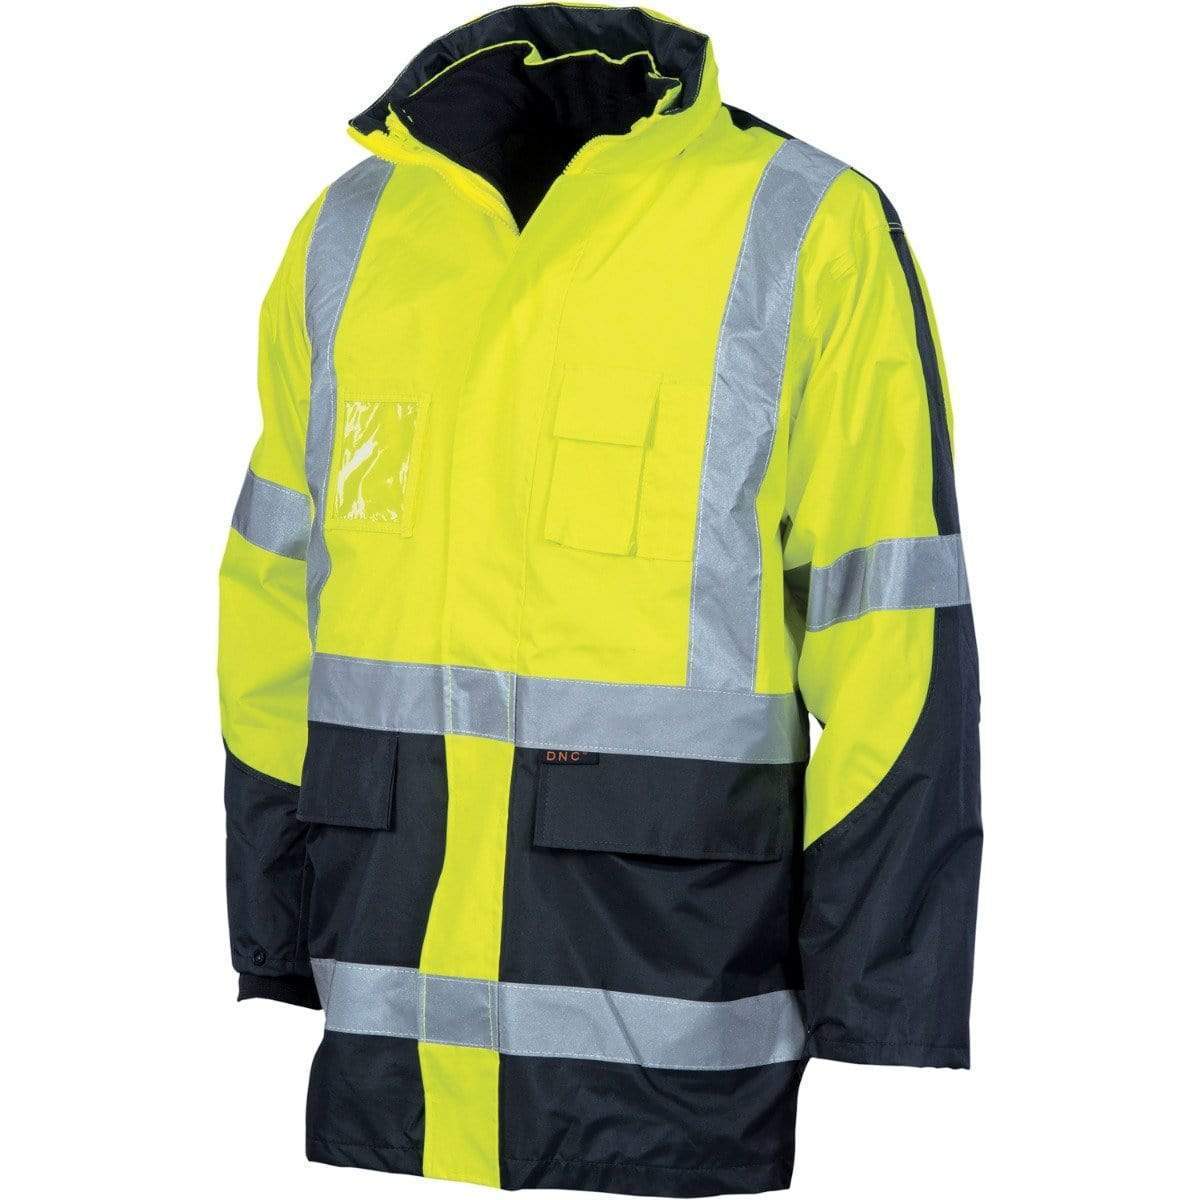 Dnc Workwear Hi-vis Cross Back 2 Tone D/n 6-in-1 Contrast Jacket - 3998 Work Wear DNC Workwear Yellow/Navy S 